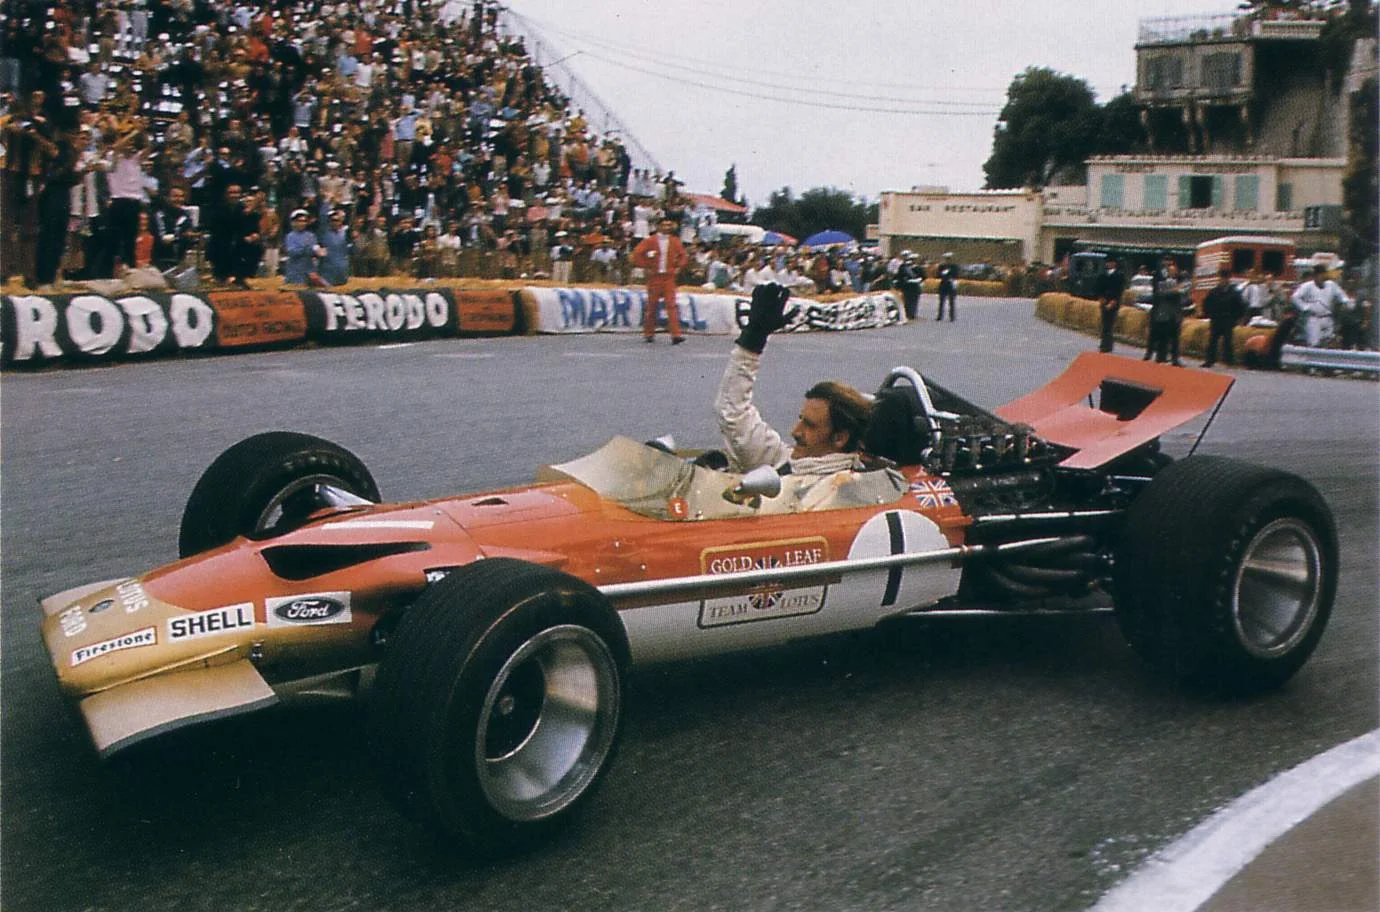 Graham Hill celebrates as he wins the 1969 Monaco Grand Prix - his 5th Monaco Grand Prix victory!